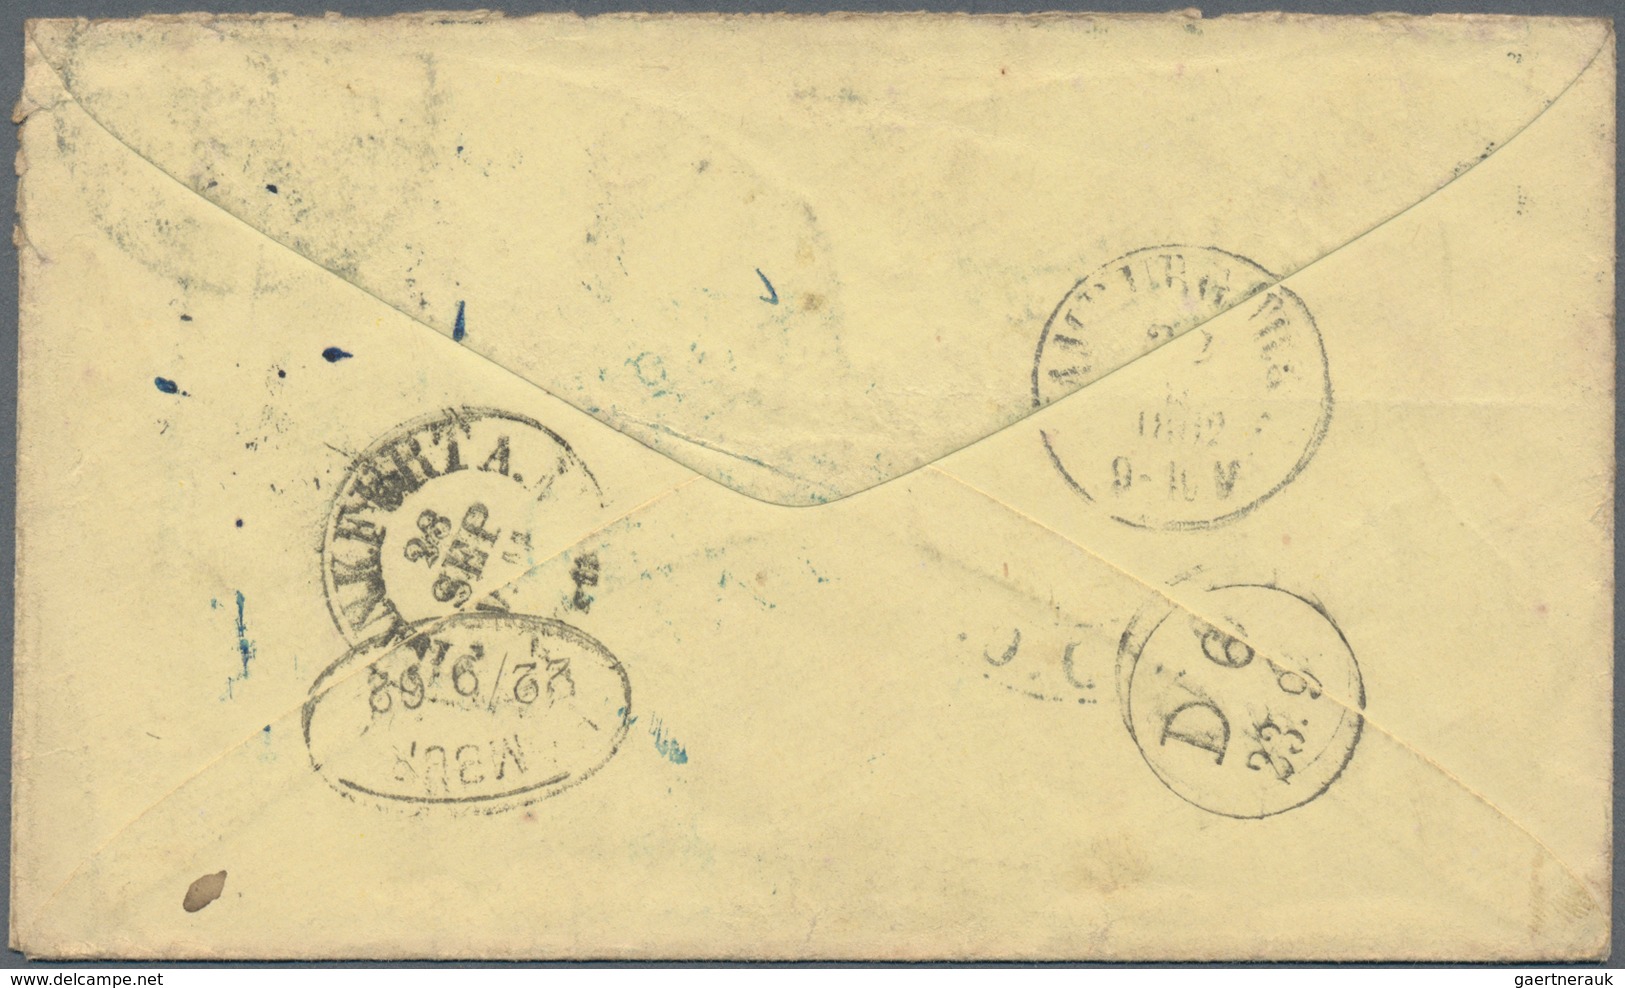 Vereinigte Staaten Von Amerika: 1862, Stampless Cover From "WASHINGTON D.C. SEP 2 1862" To Darmstadt - Gebruikt